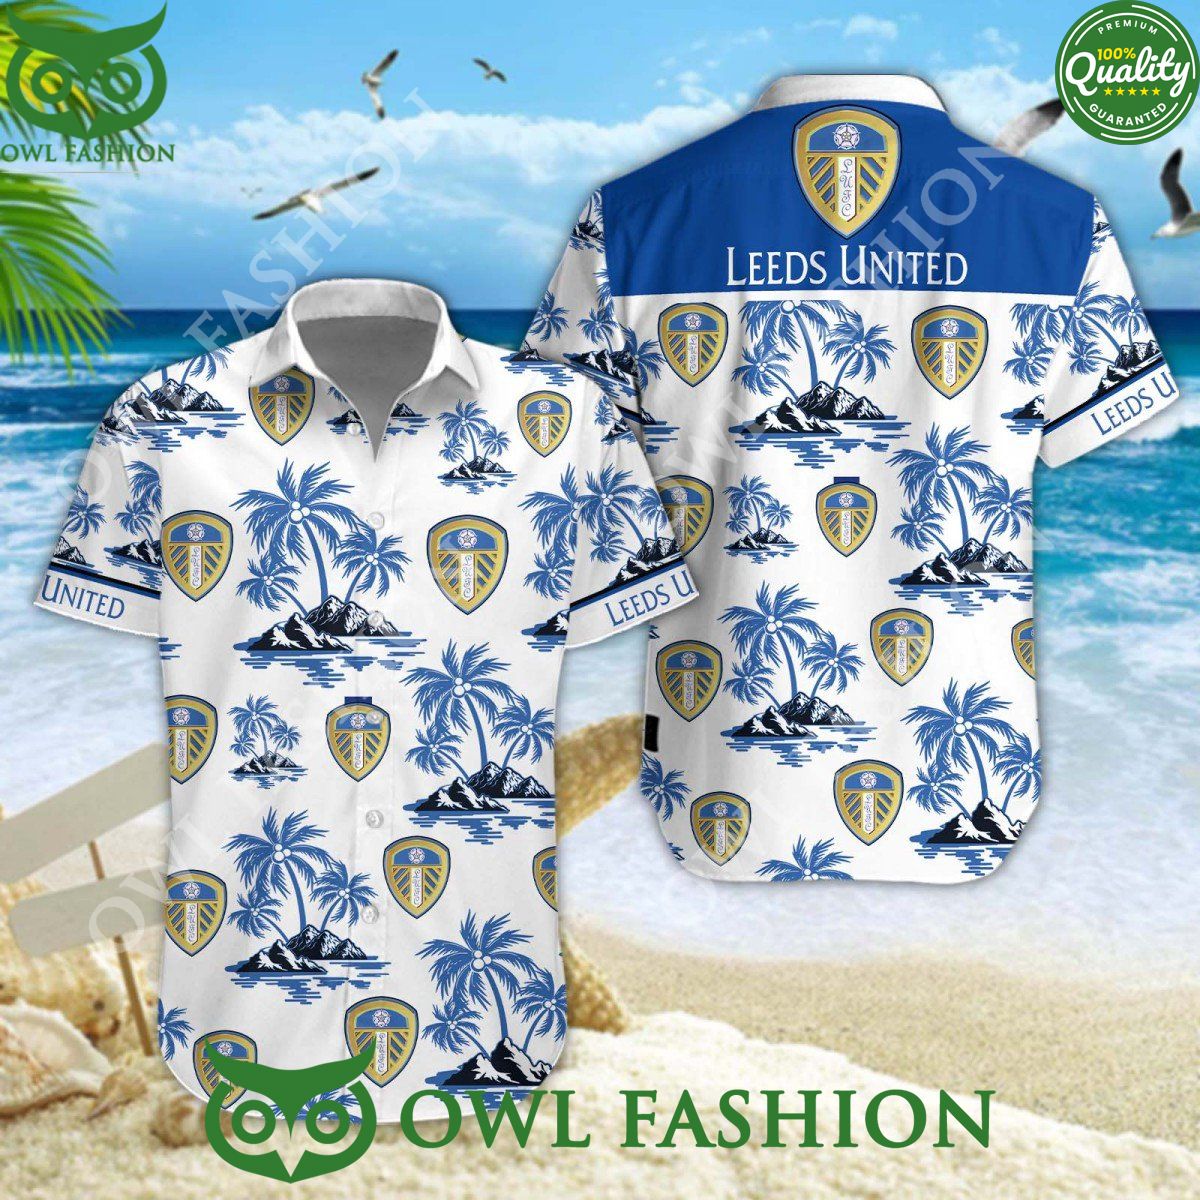 Football club Leeds United Tropical Coconut Island Hawaiian shirt